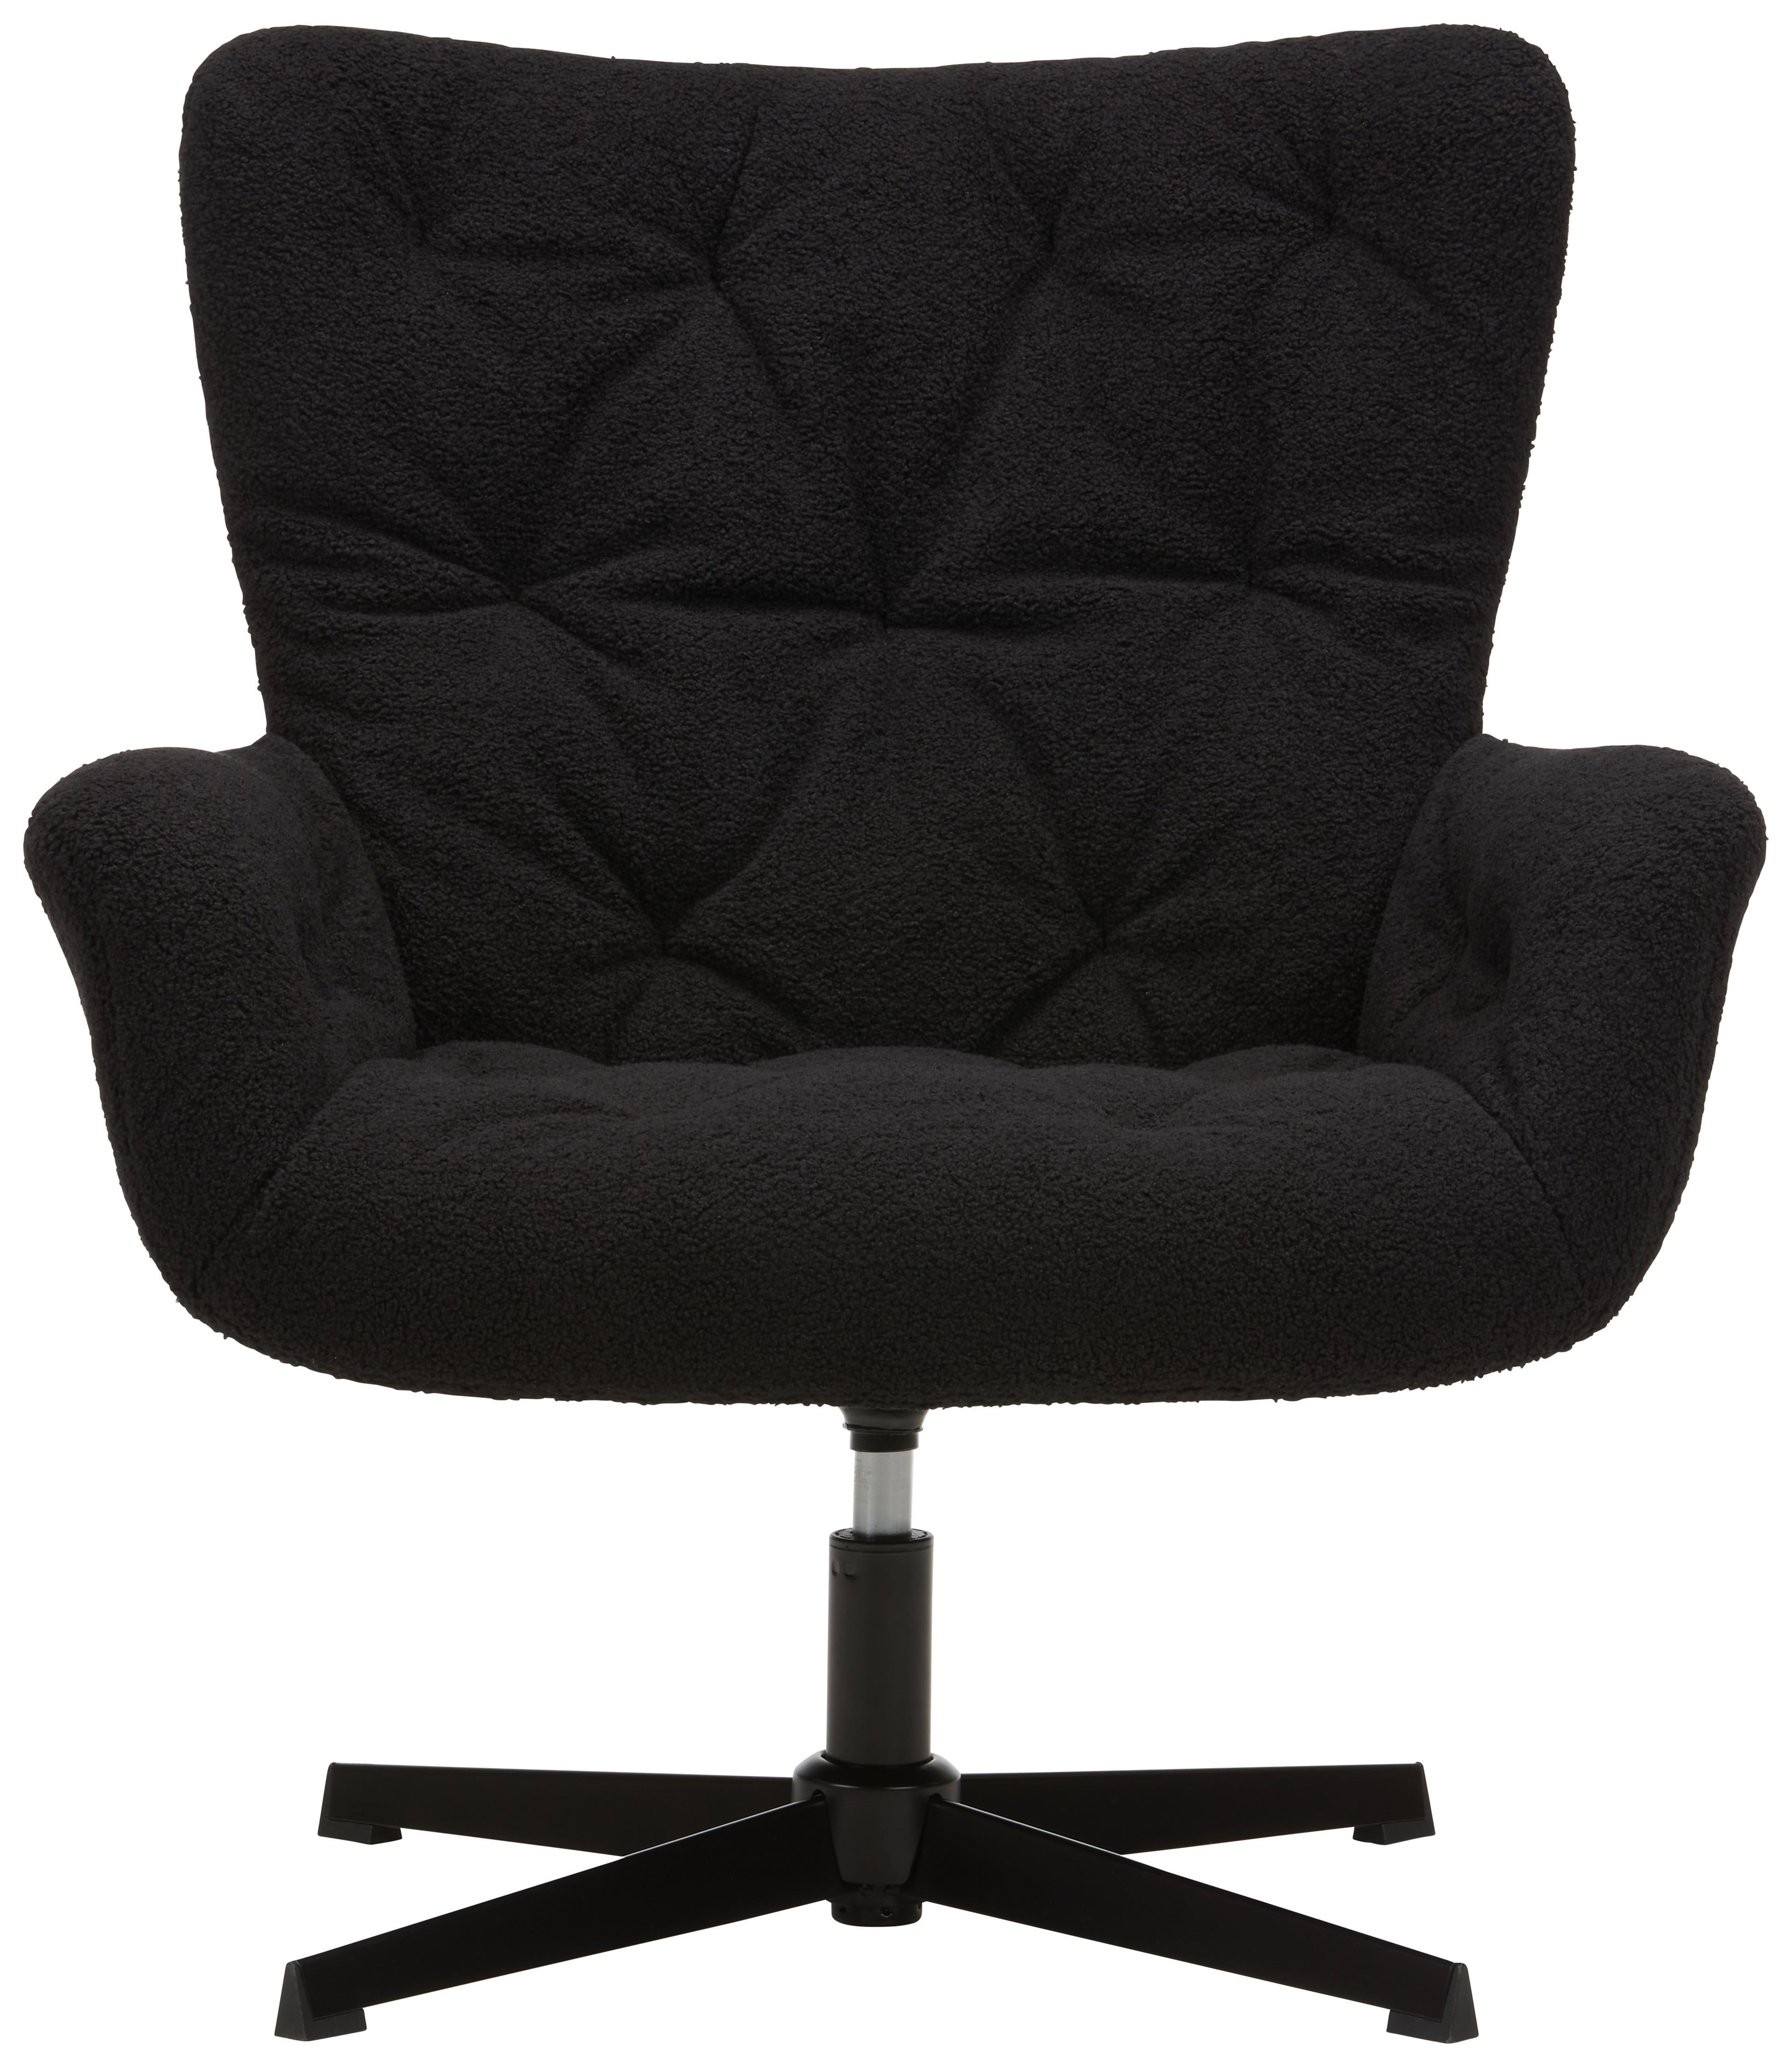 Vrtljivi Stol Lounge -Trend- - črna, Moderno, kovina/tekstil (85cm) - Premium Living